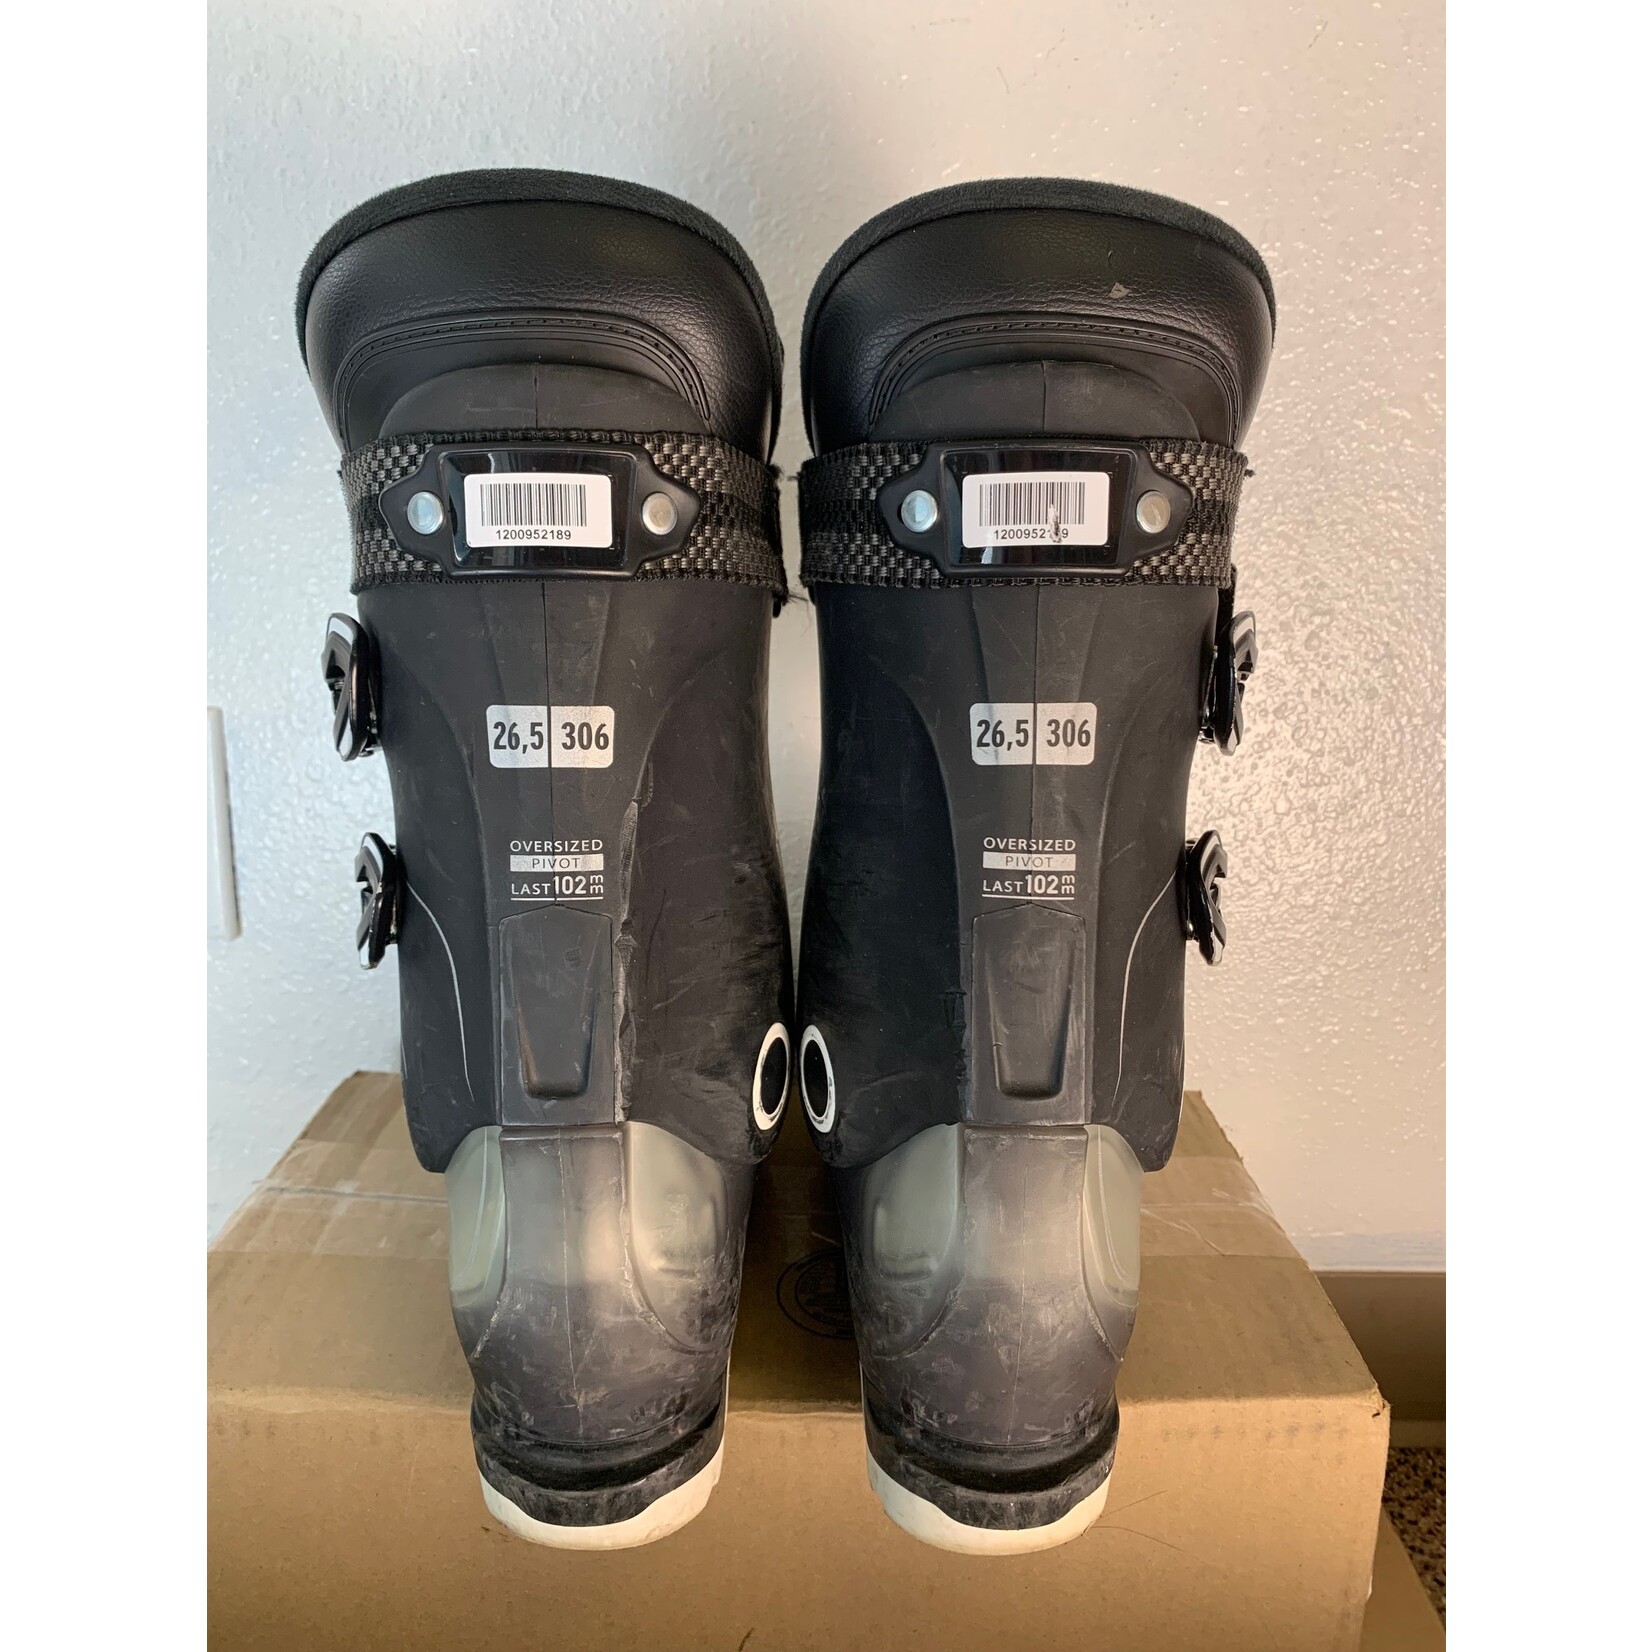 Salomon 2020 Salomon X Pro 90 Ski Boots, Size 26.5